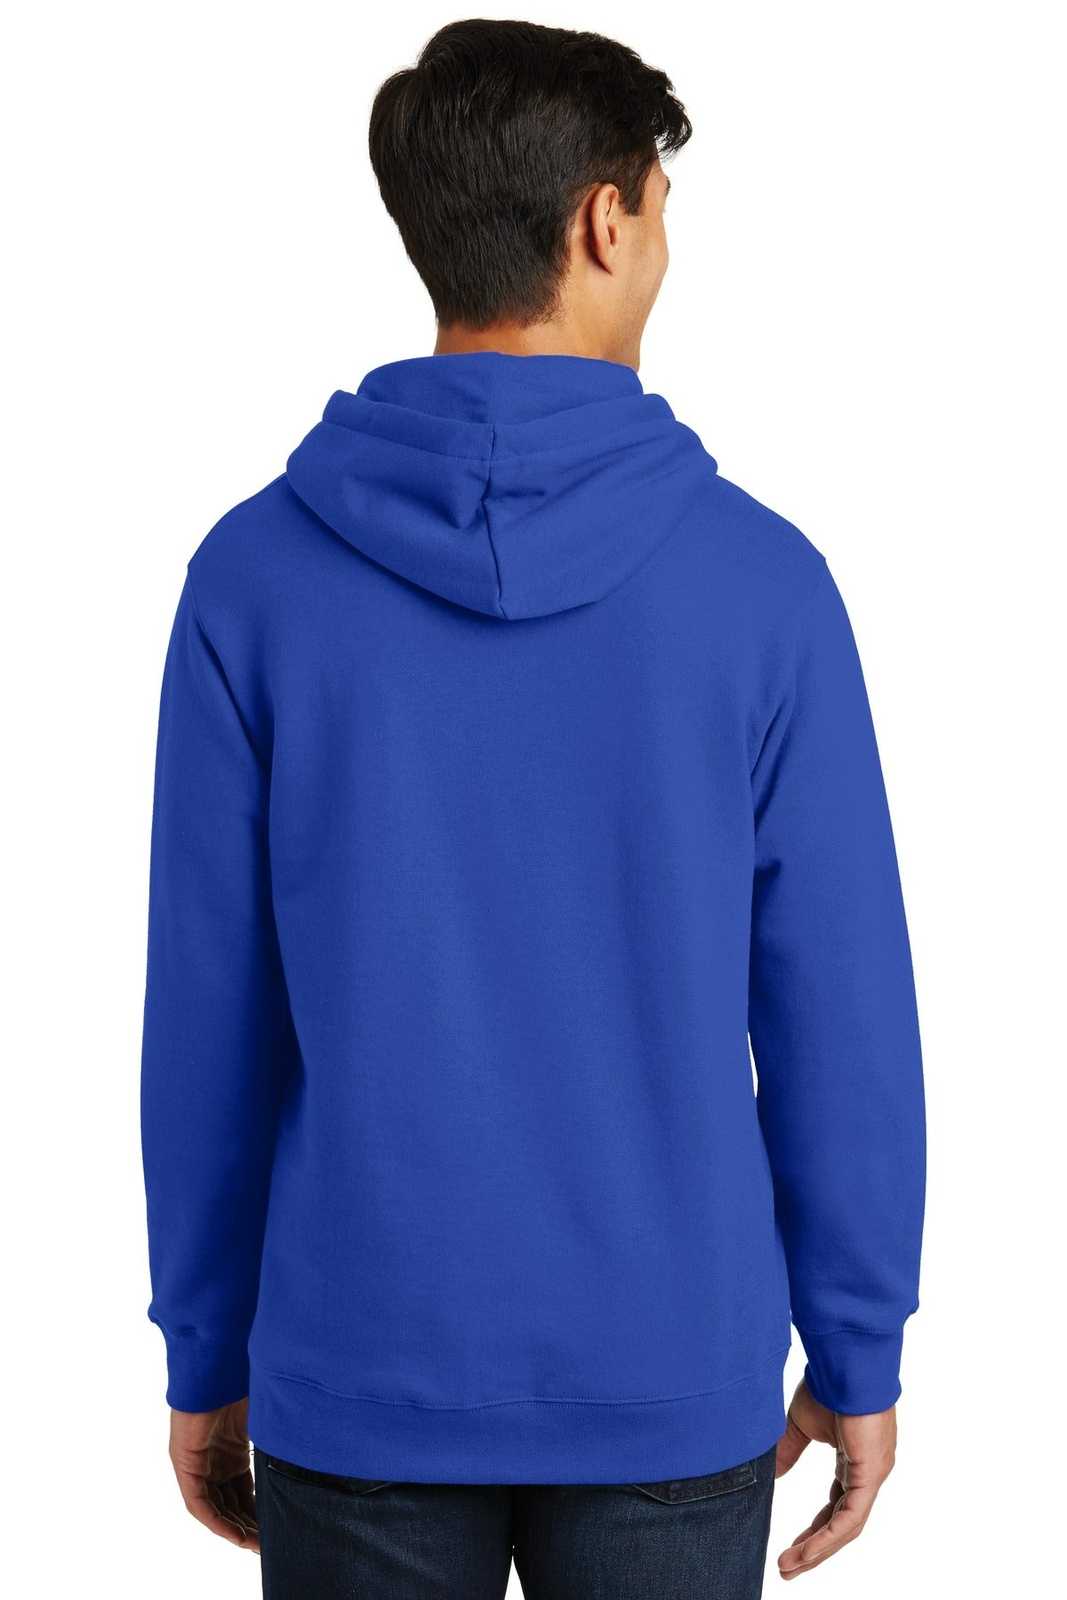 Port & Company PC850H Fan Favorite Fleece Pullover Hooded Sweatshirt - True Royal - HIT a Double - 1